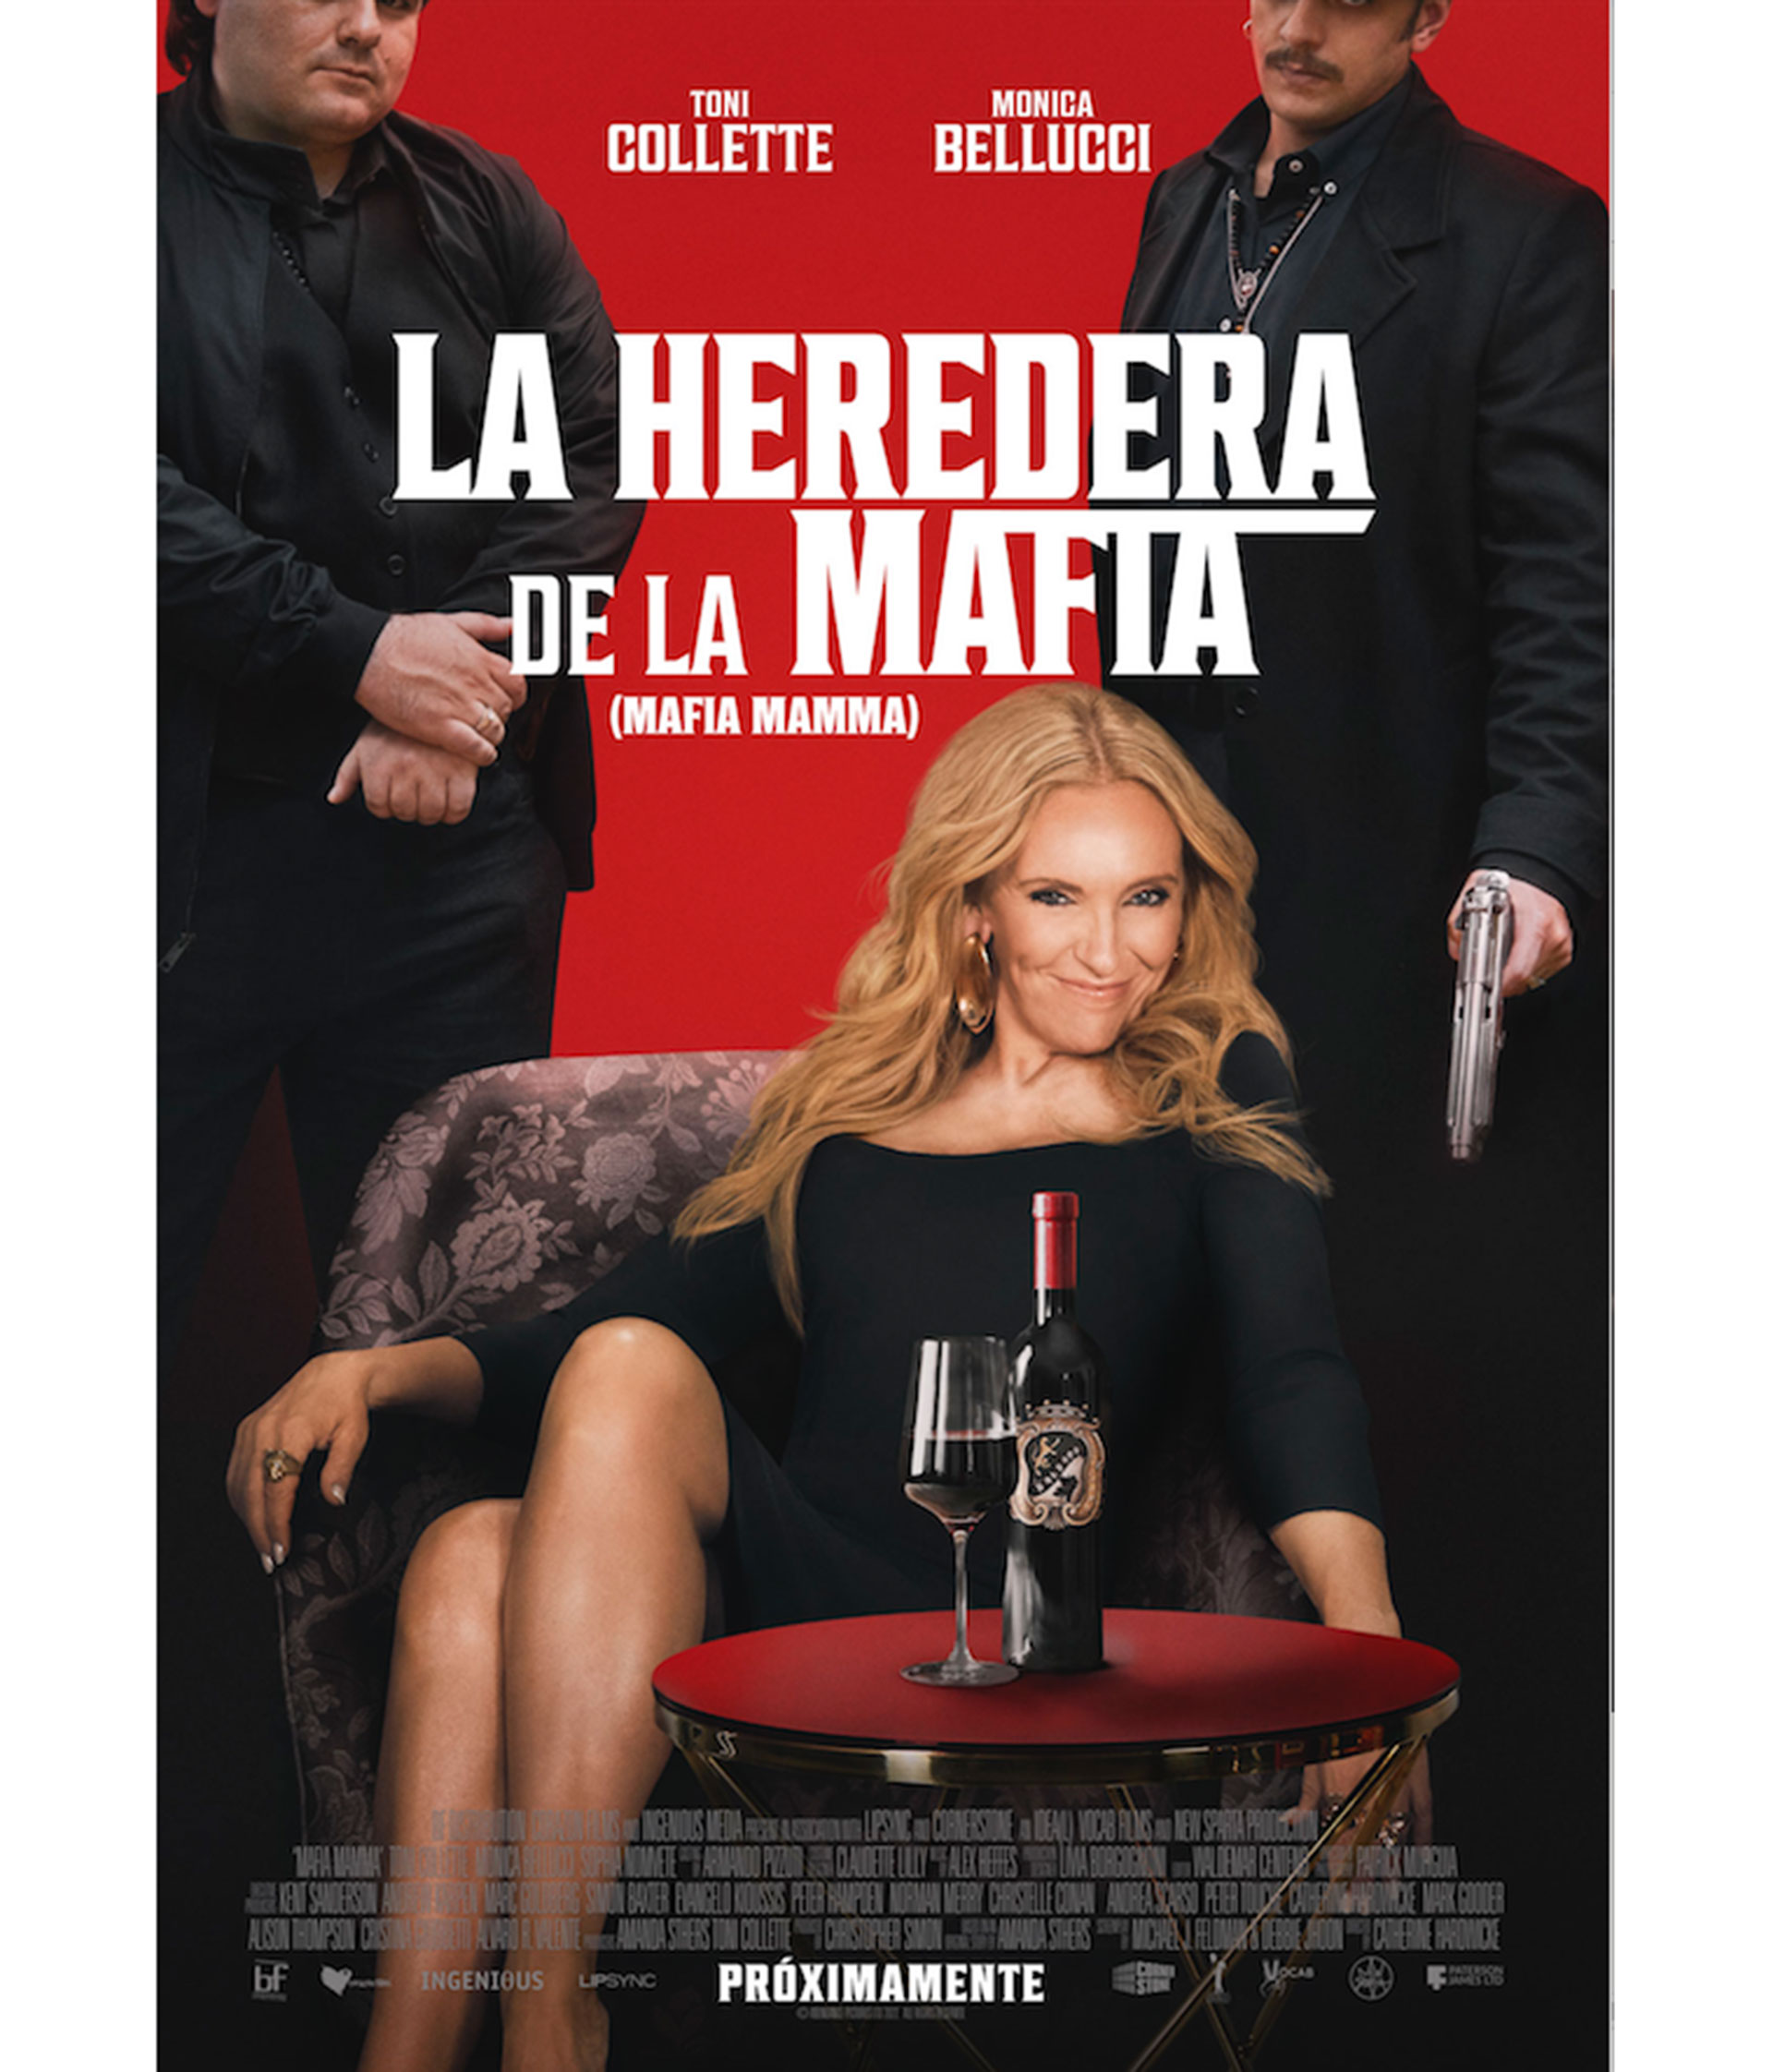 LA HEREDERA DE LA MAFIA (Mafia Mamma): Toni Collette en una comedia para disfrutar